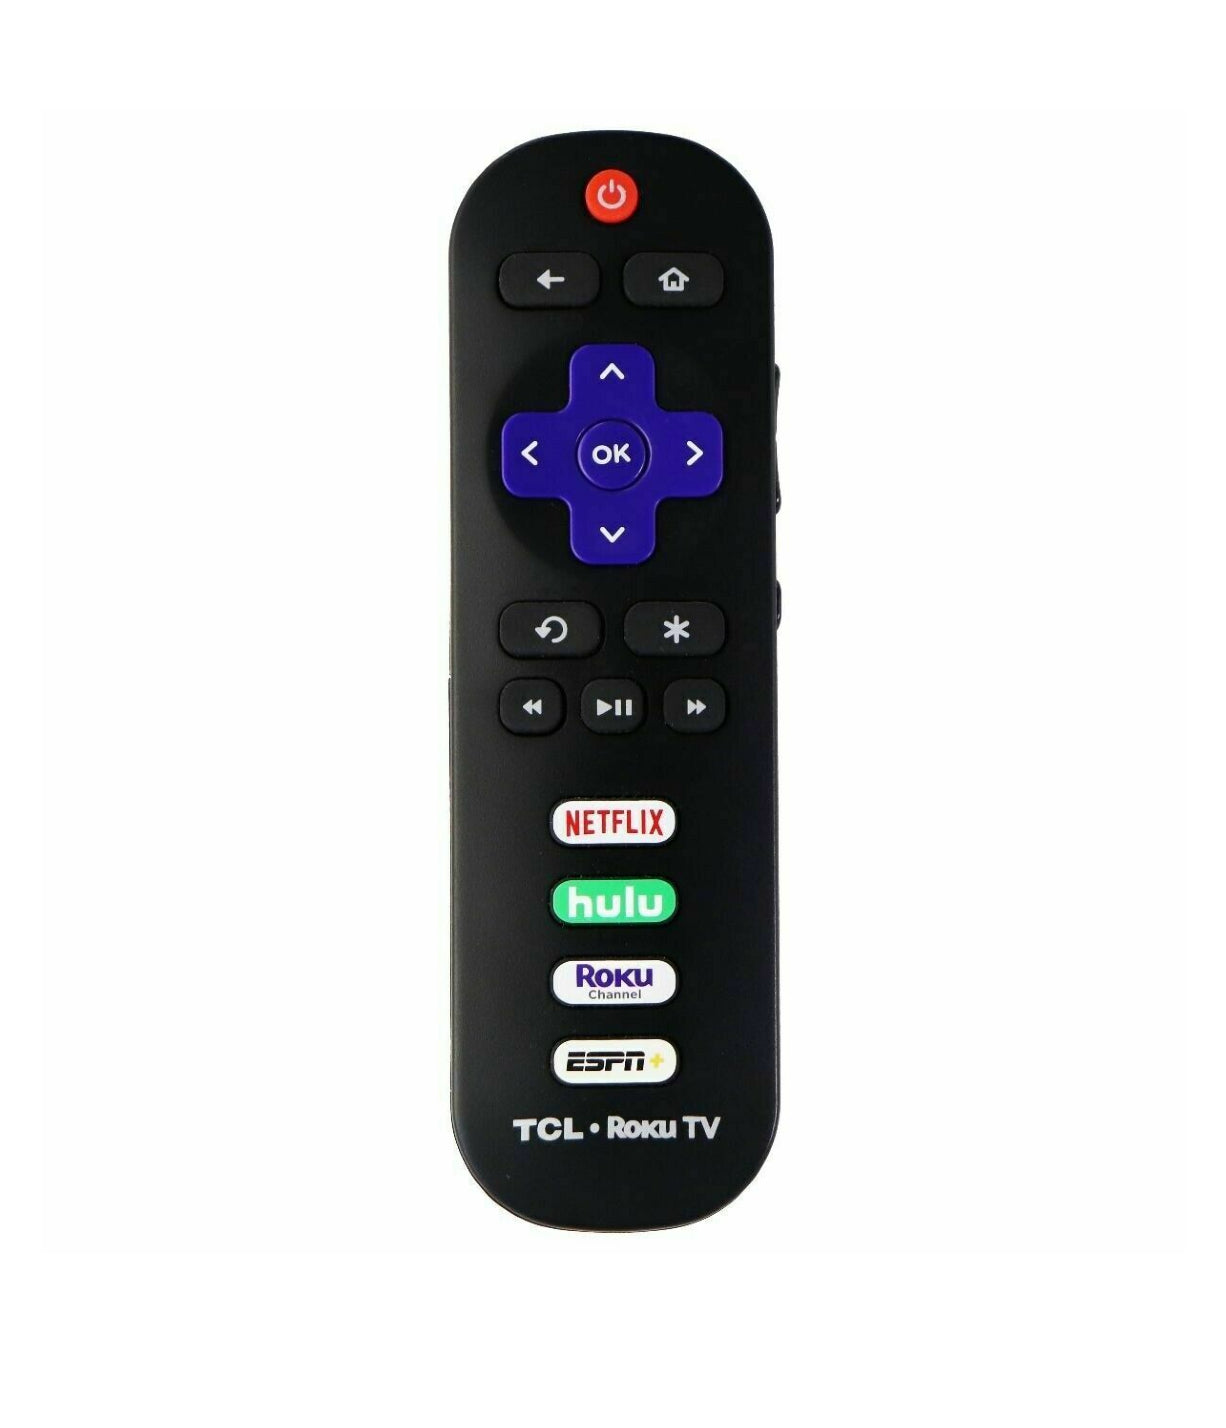 Brand New Original TCL Roku TV Remote Control with ESPN+Keys